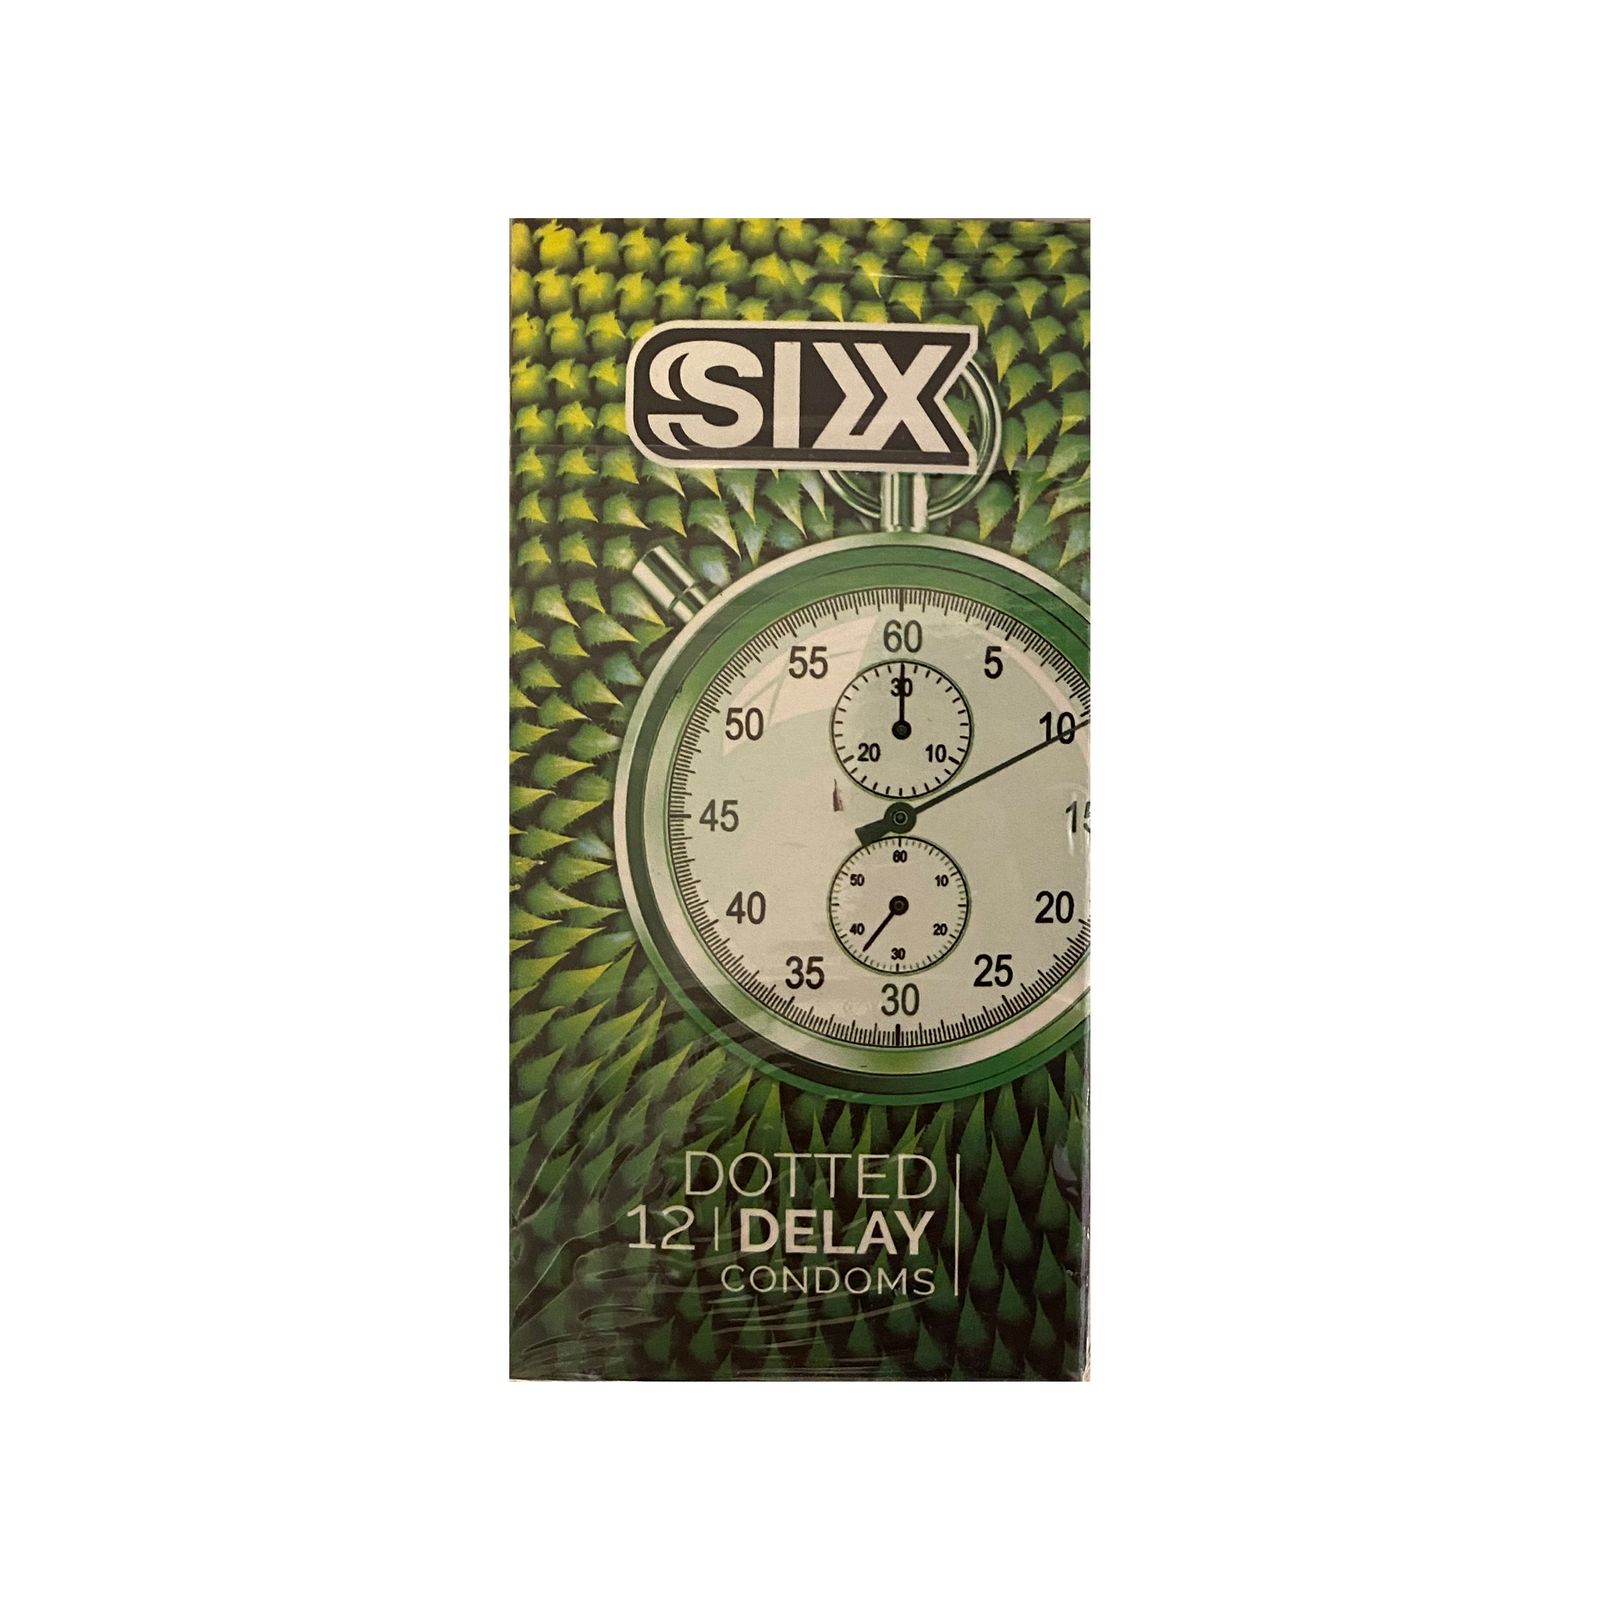 کاندوم سیکس مدل DottedDelay بسته 12 عددی -  - 1